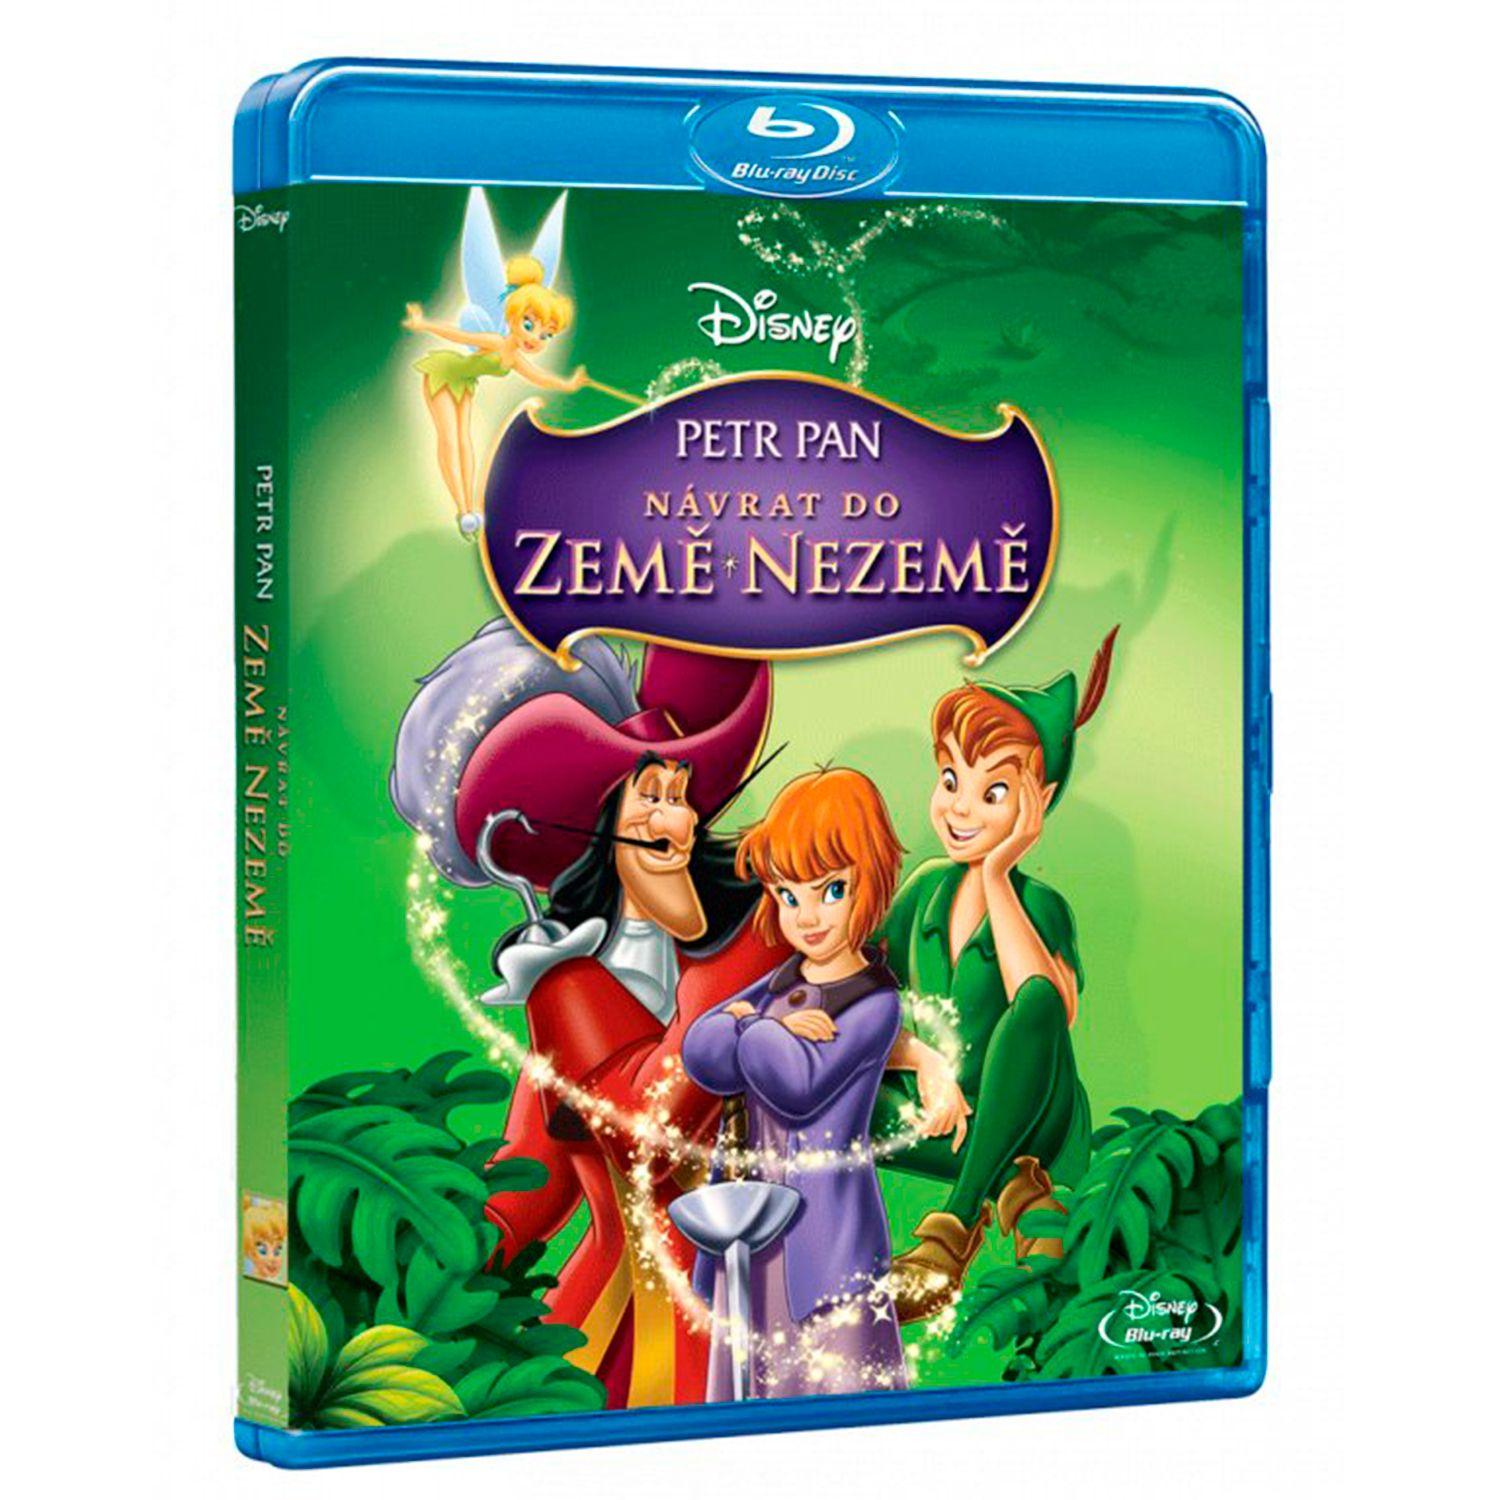 Peter Pan 2 (DVD)